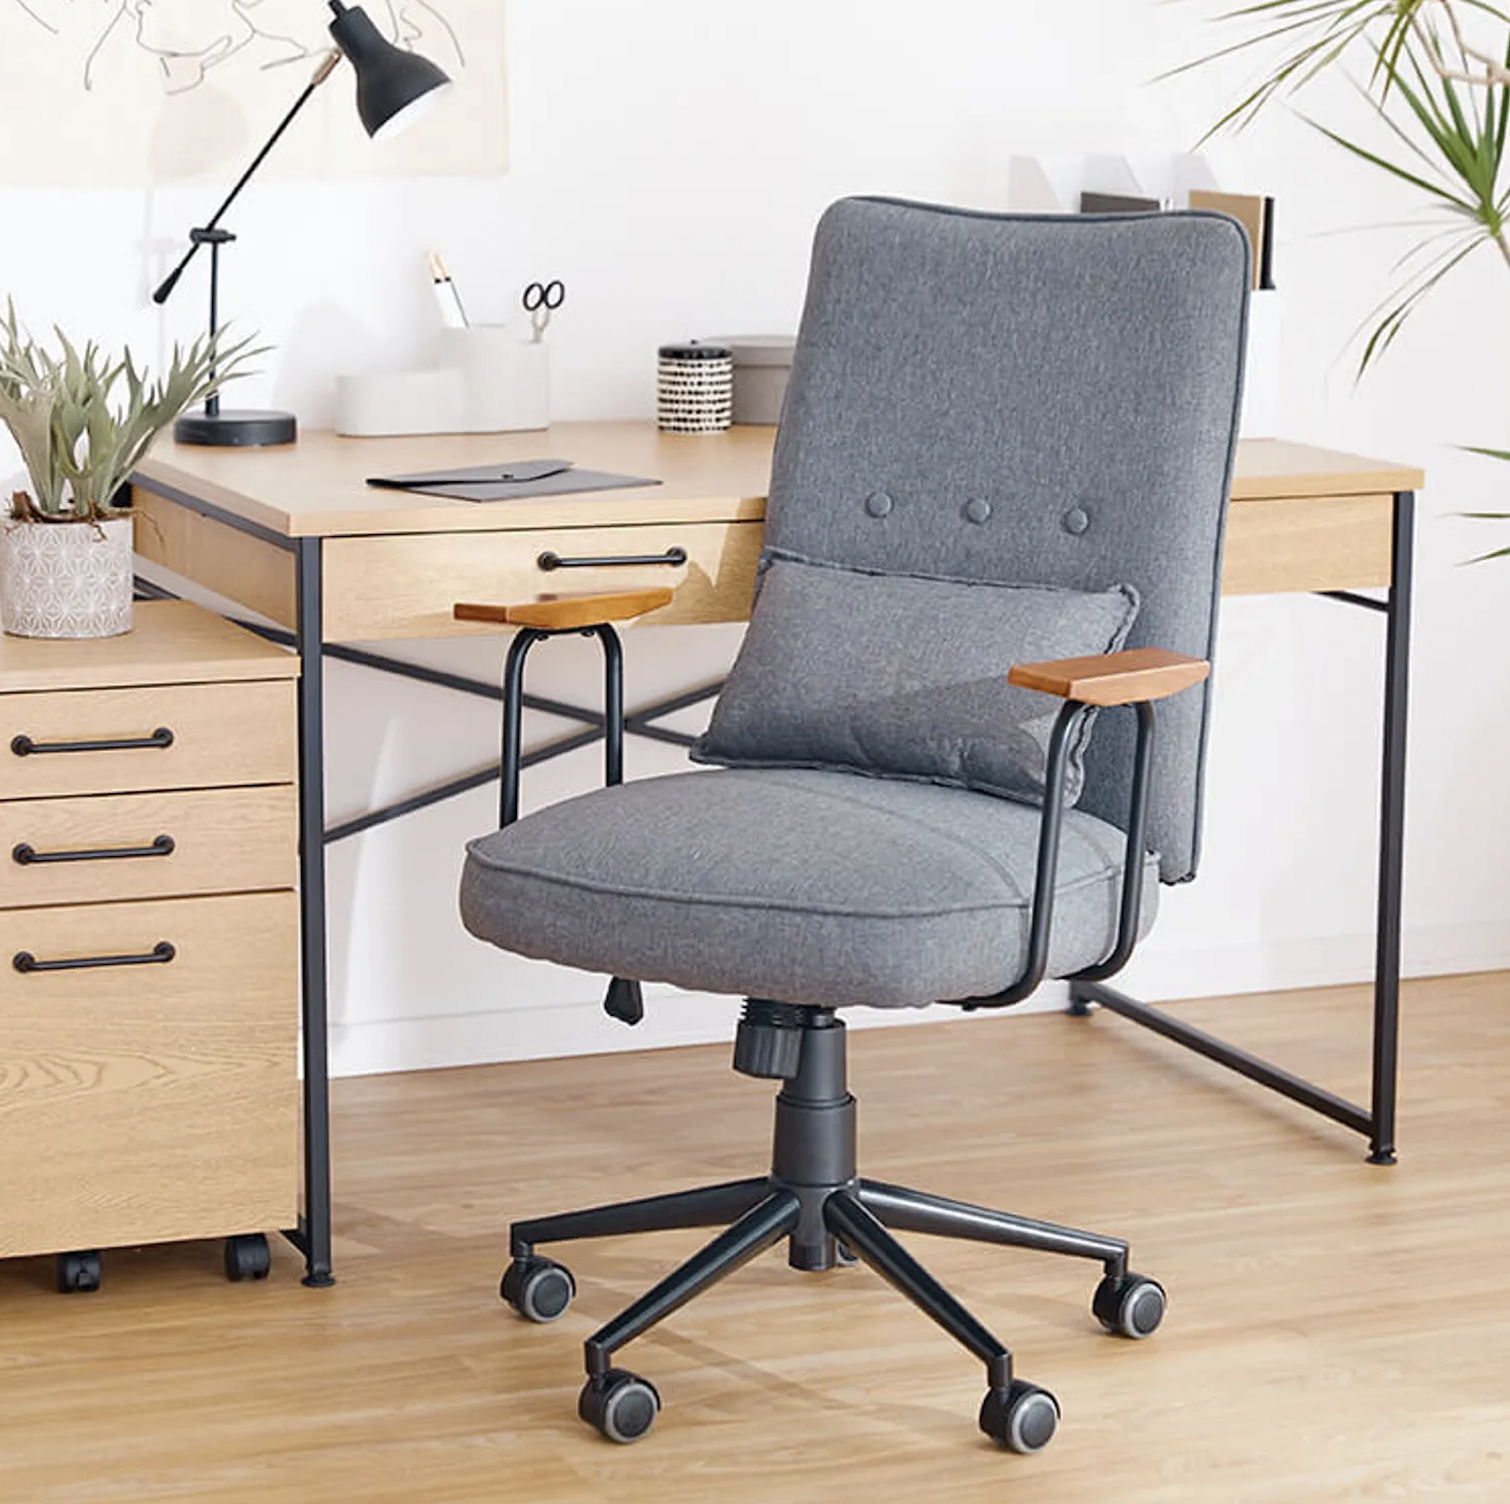 （18）全面クッション素材で長時間の作業をサポート！おしゃれなデザインにこだわった「[幅60]デスクチェア オフィスチェア キャスター 椅子 チェア 学習椅子」